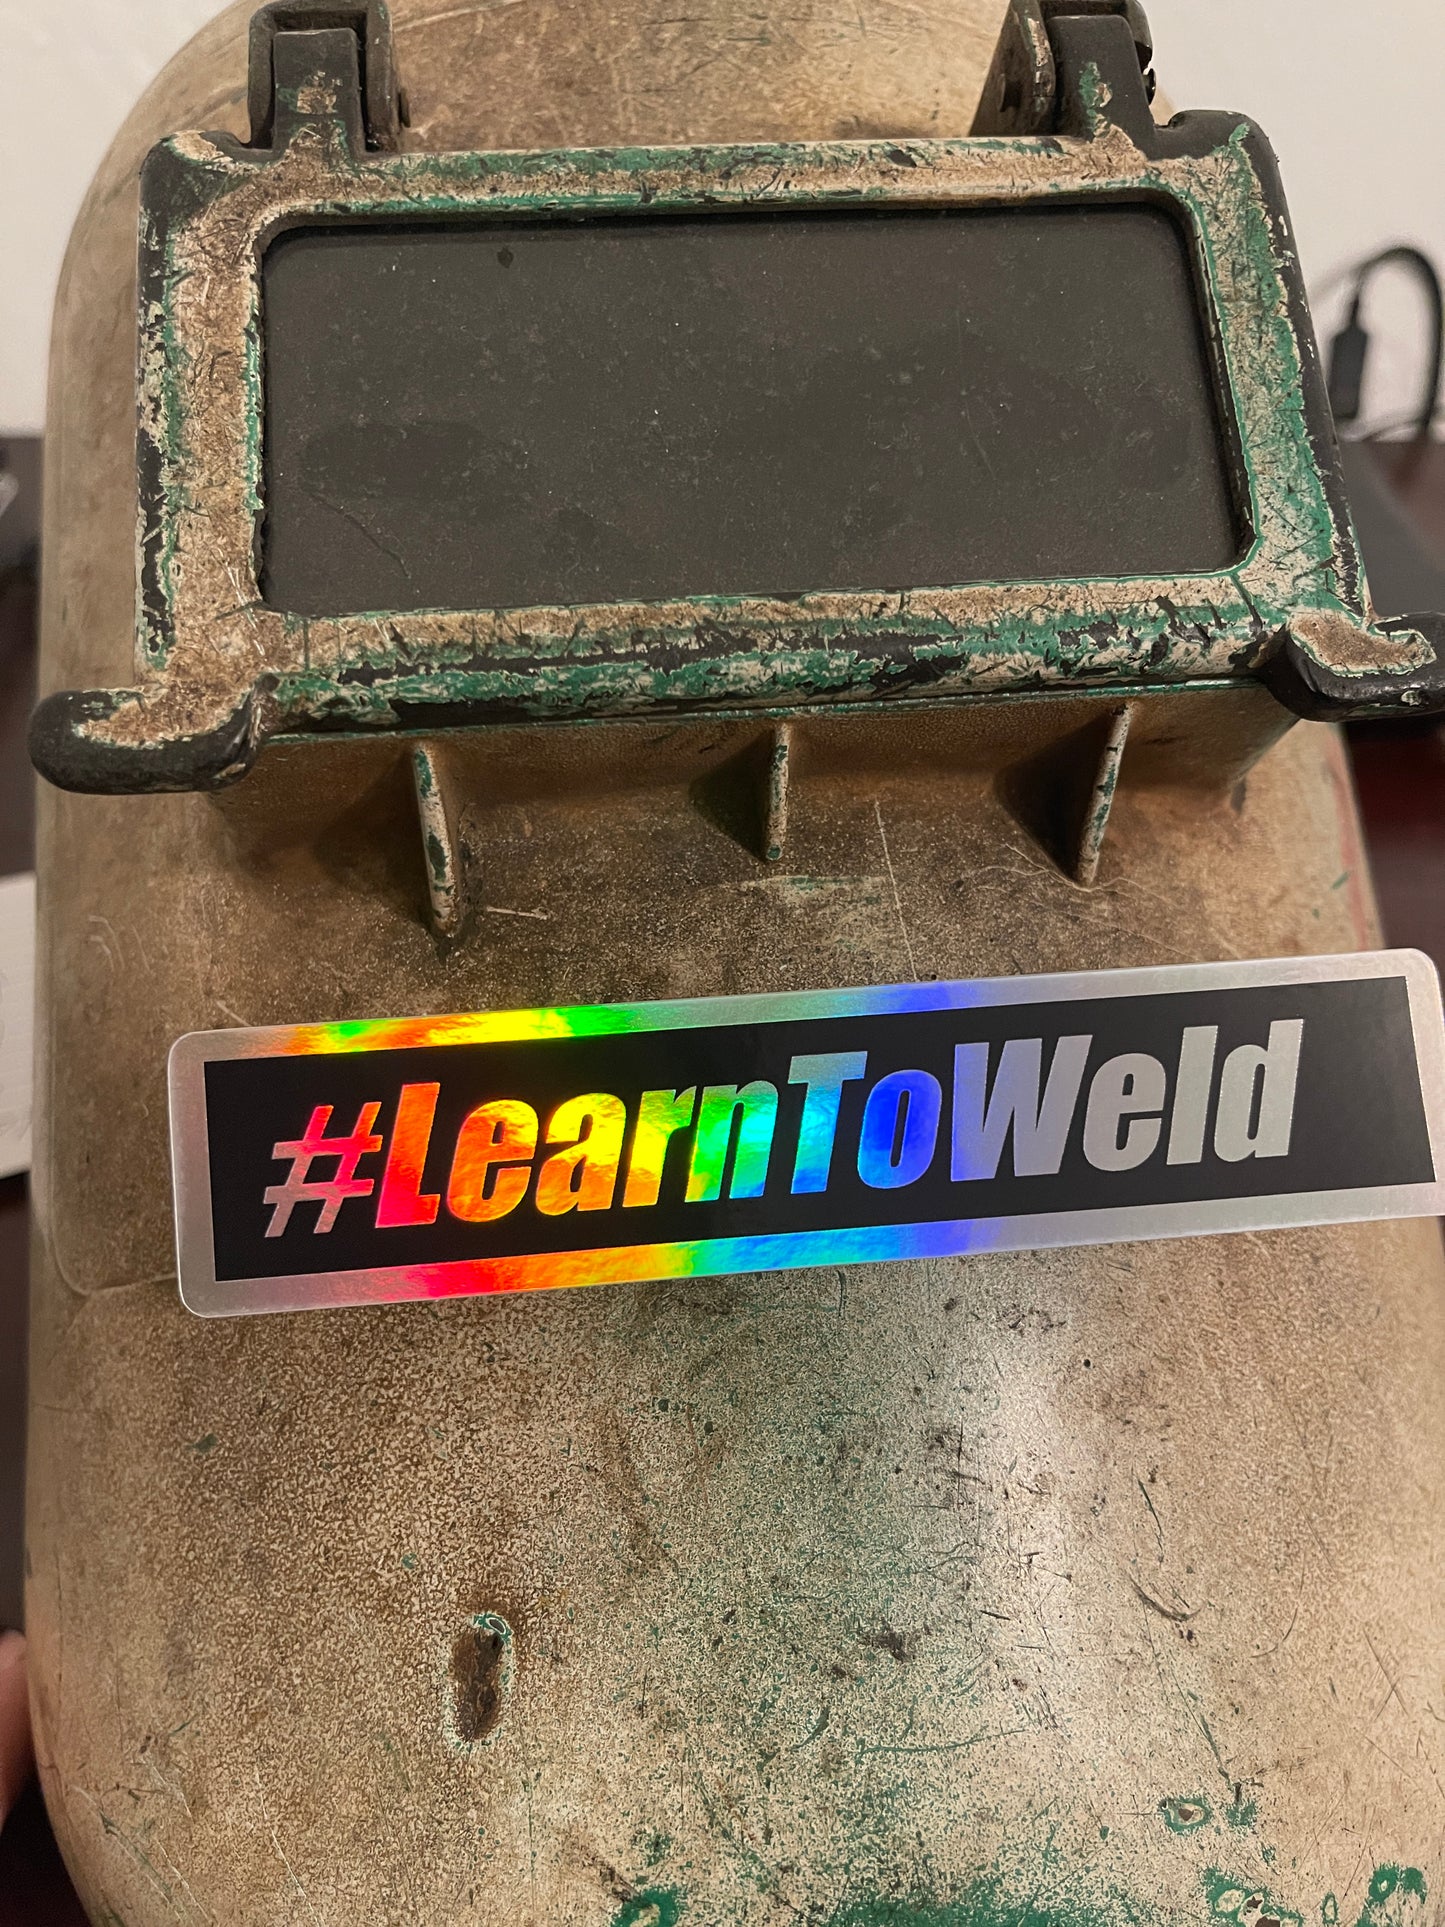 #LearnToWeld sticker